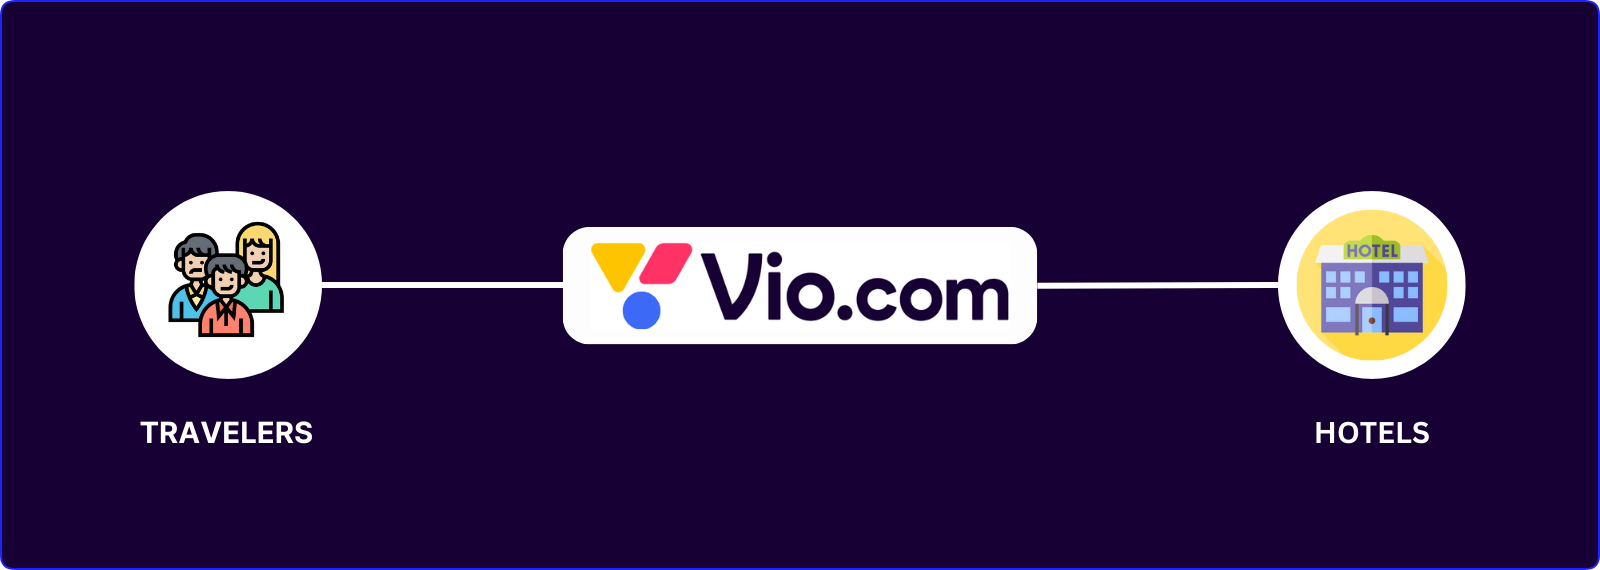 πώς λειτουργεί το vio.com